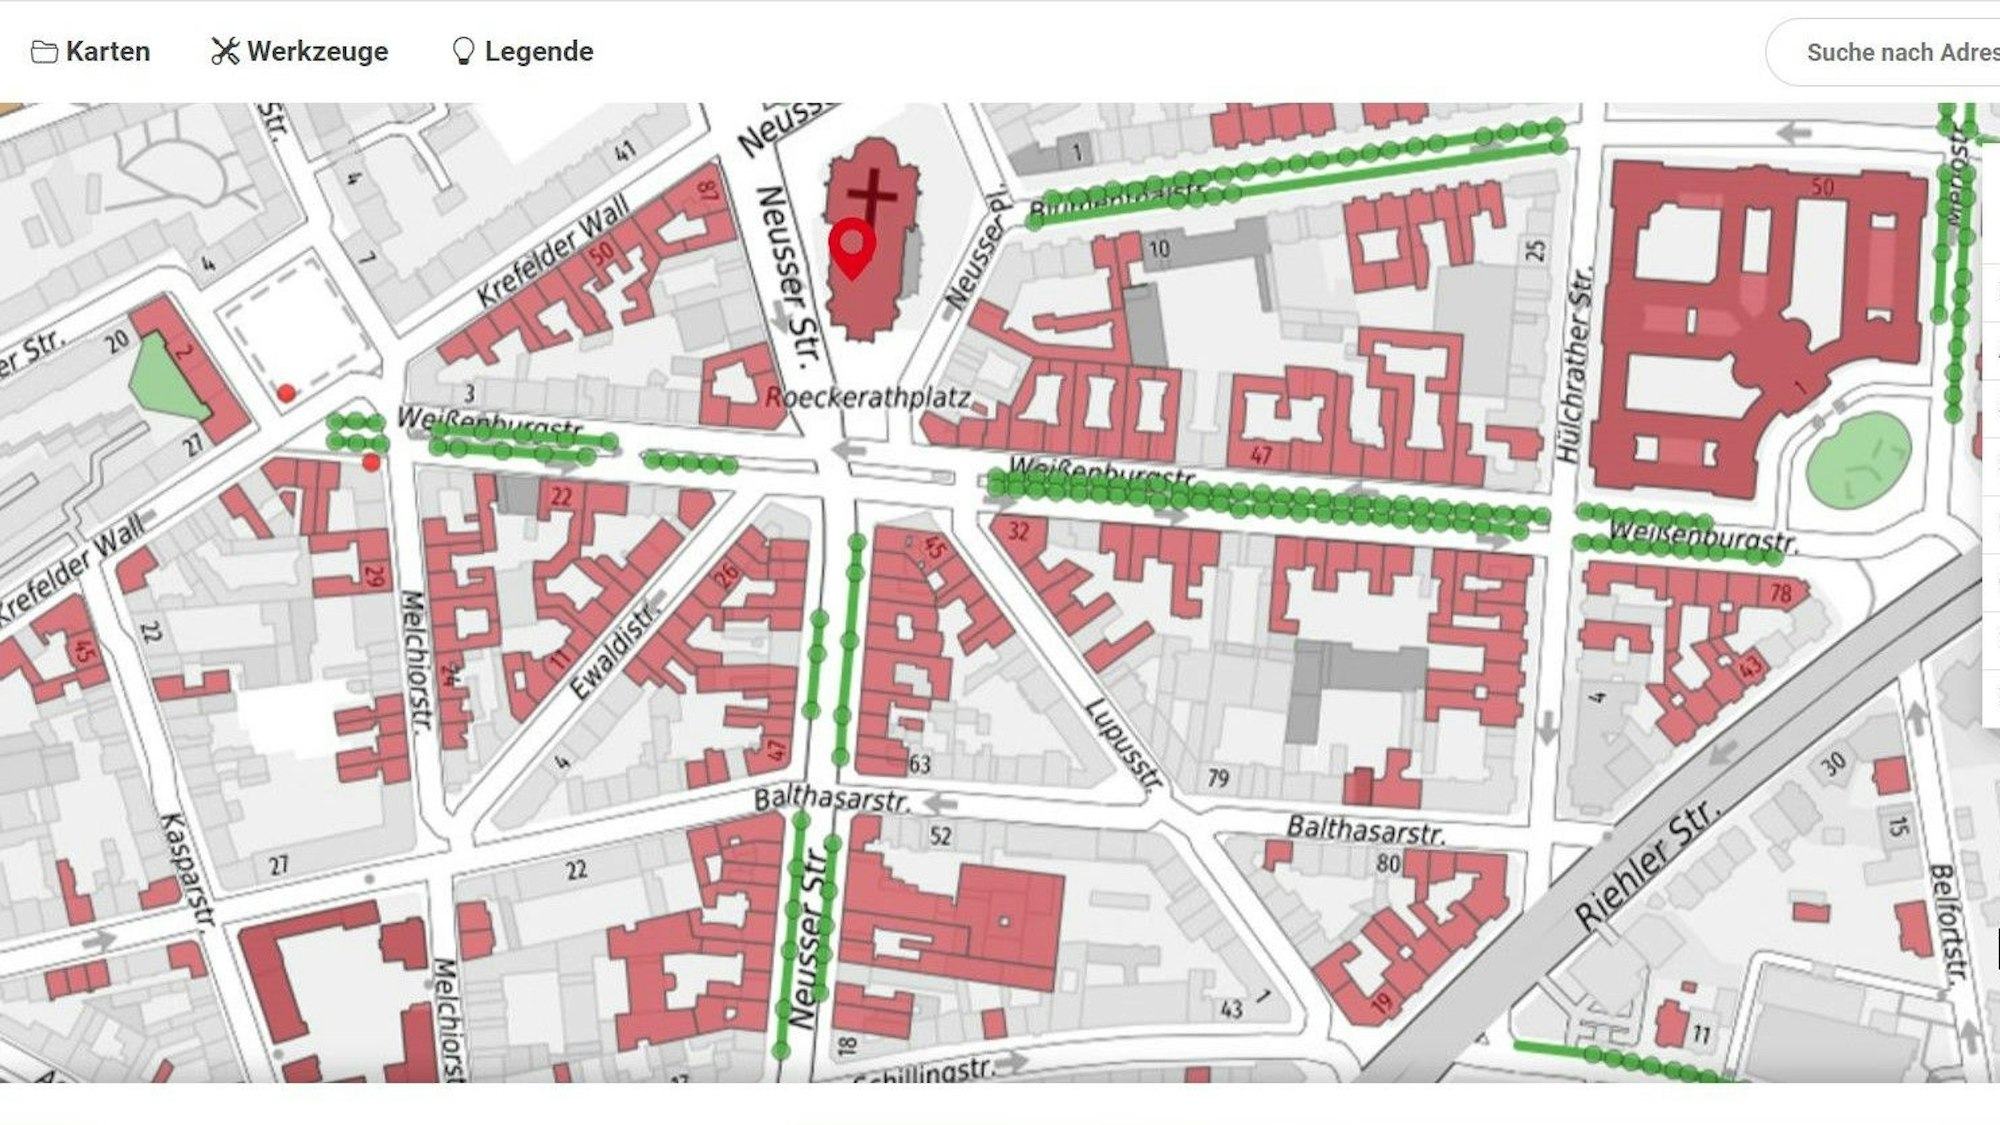 Zu sehen ist eine interaktive Karte, die den Bereich rund um die Kölner Agneskirche zeigt.